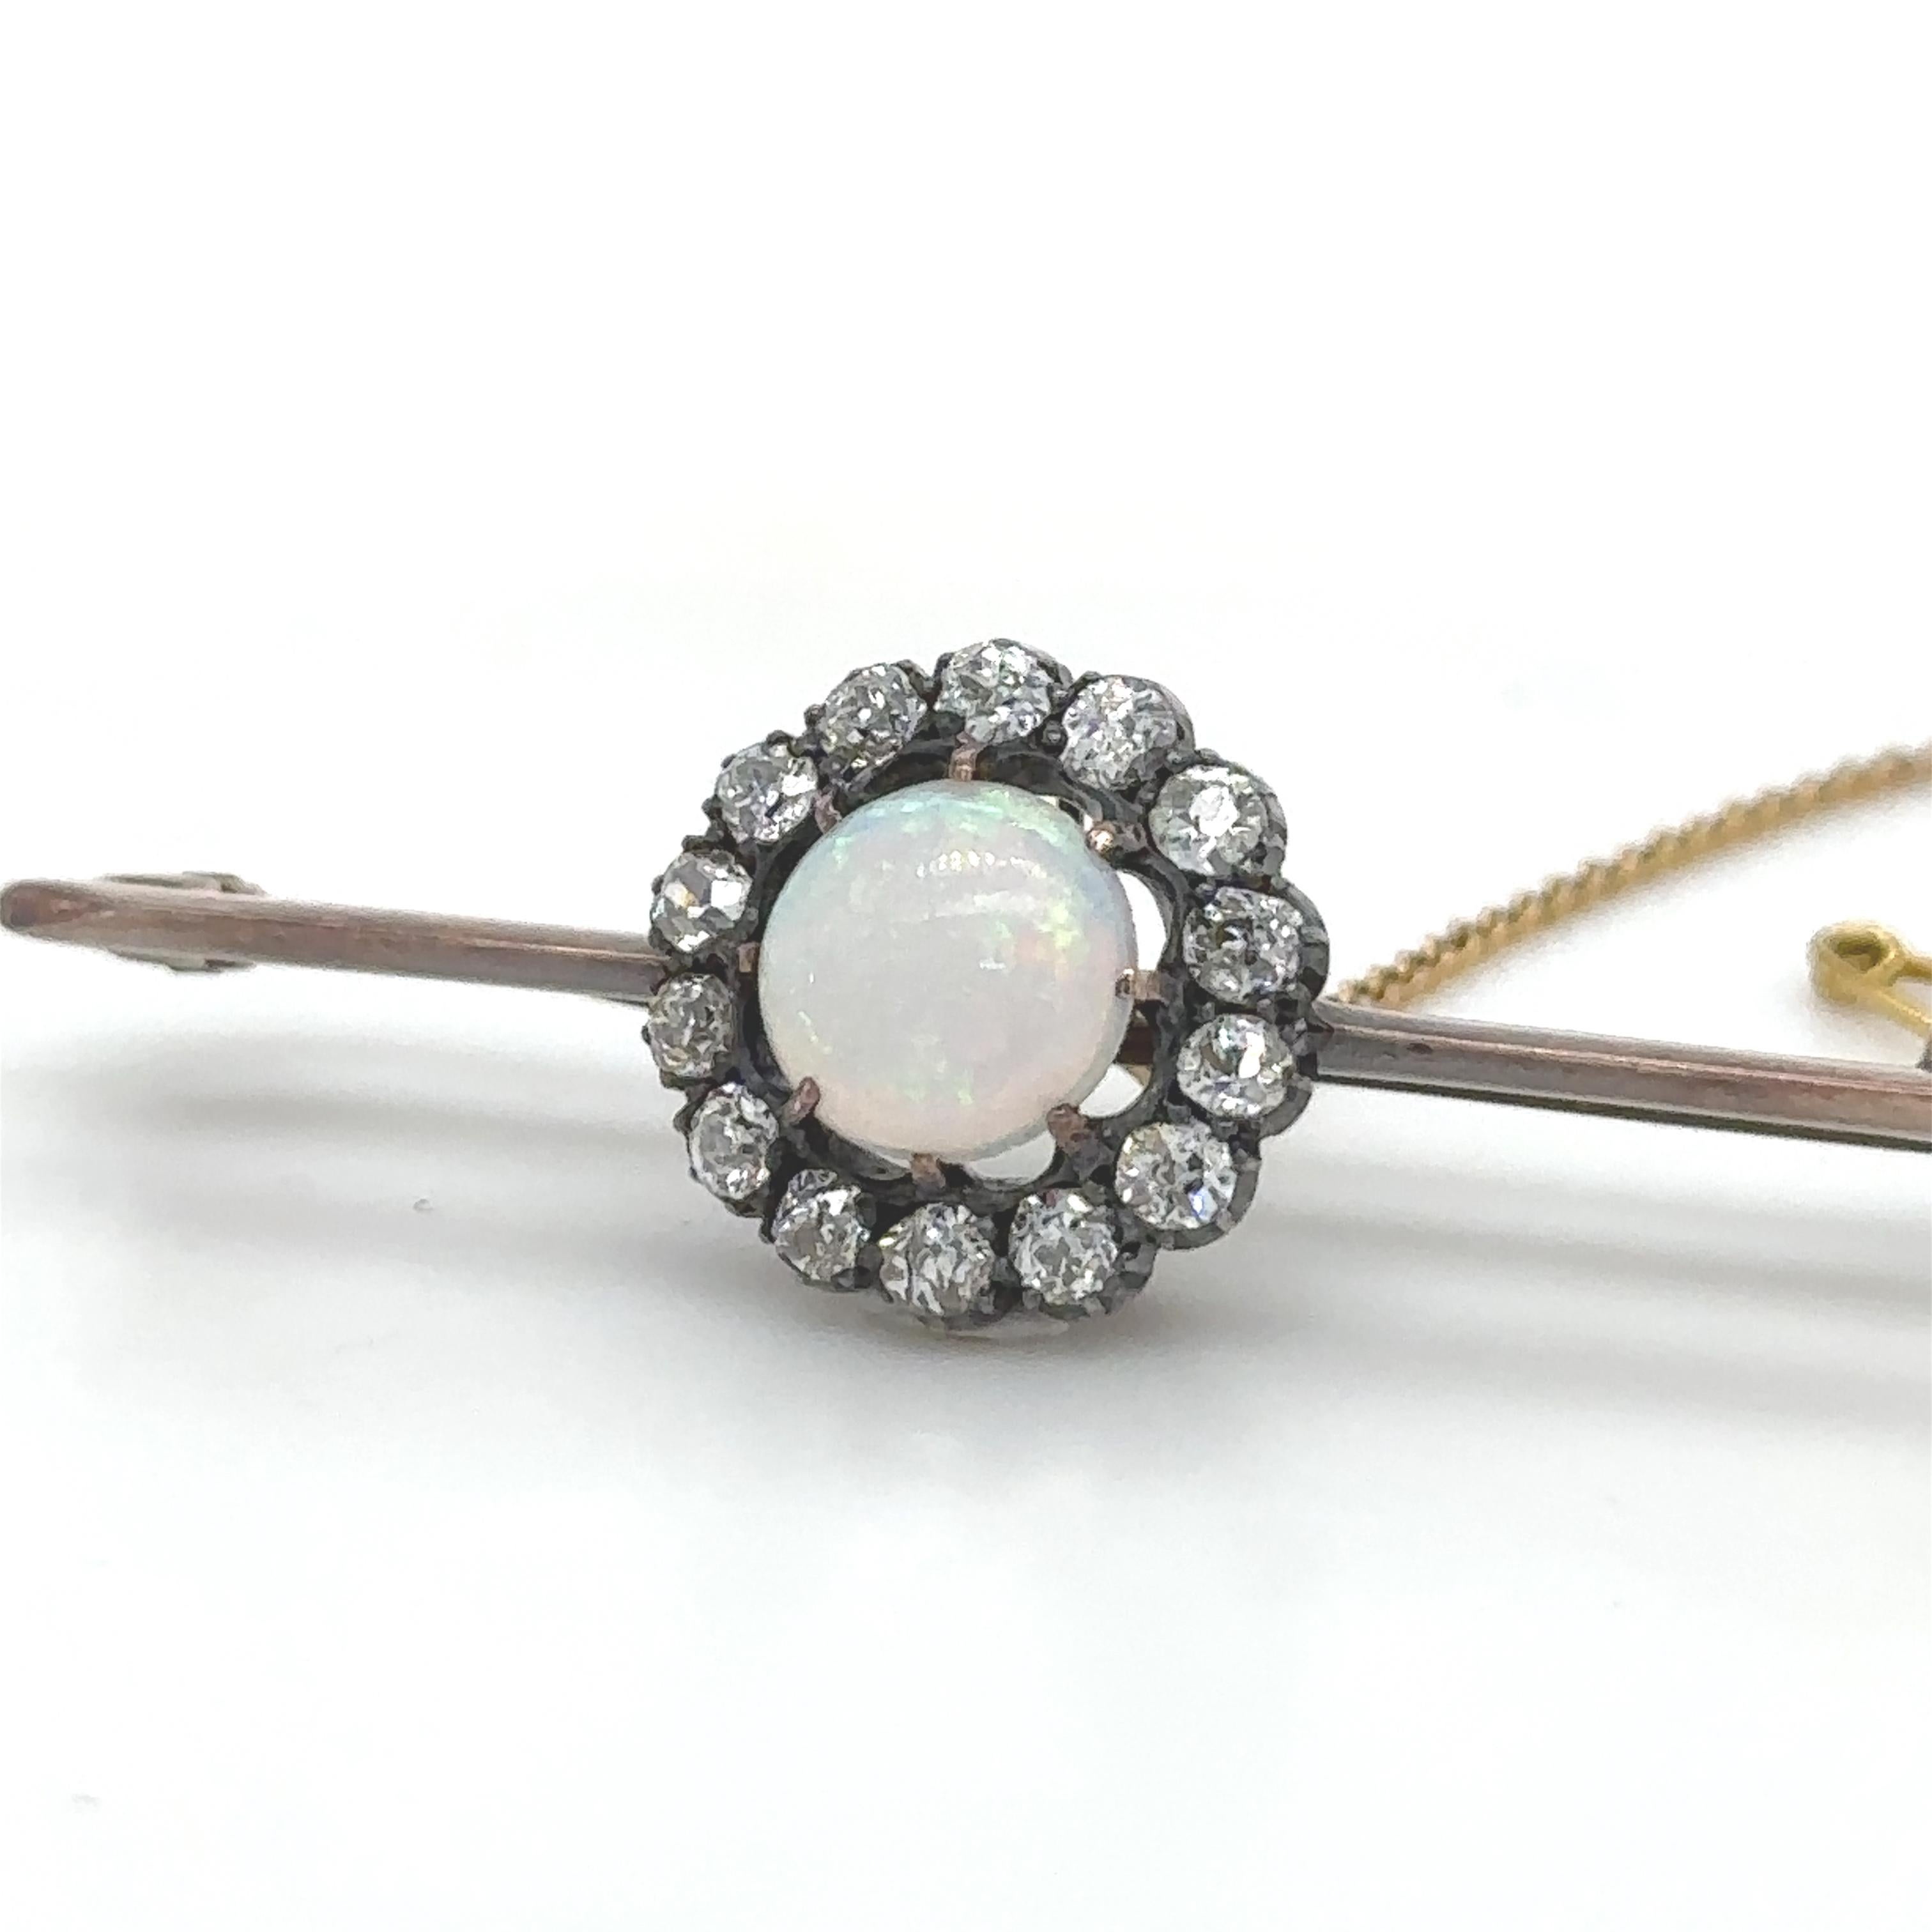 Eine runde Opal- und Diamant-Cluster-Brosche mit einem runden, massiven weißen Kristall-Opal in einer Umrandung aus 14 Diamanten im Altschliff, gefasst in Silber und 9 Karat Roségold.

Opal 1,00ct (geschätzt), 8mm rund, 2,5mm tief, mittlere